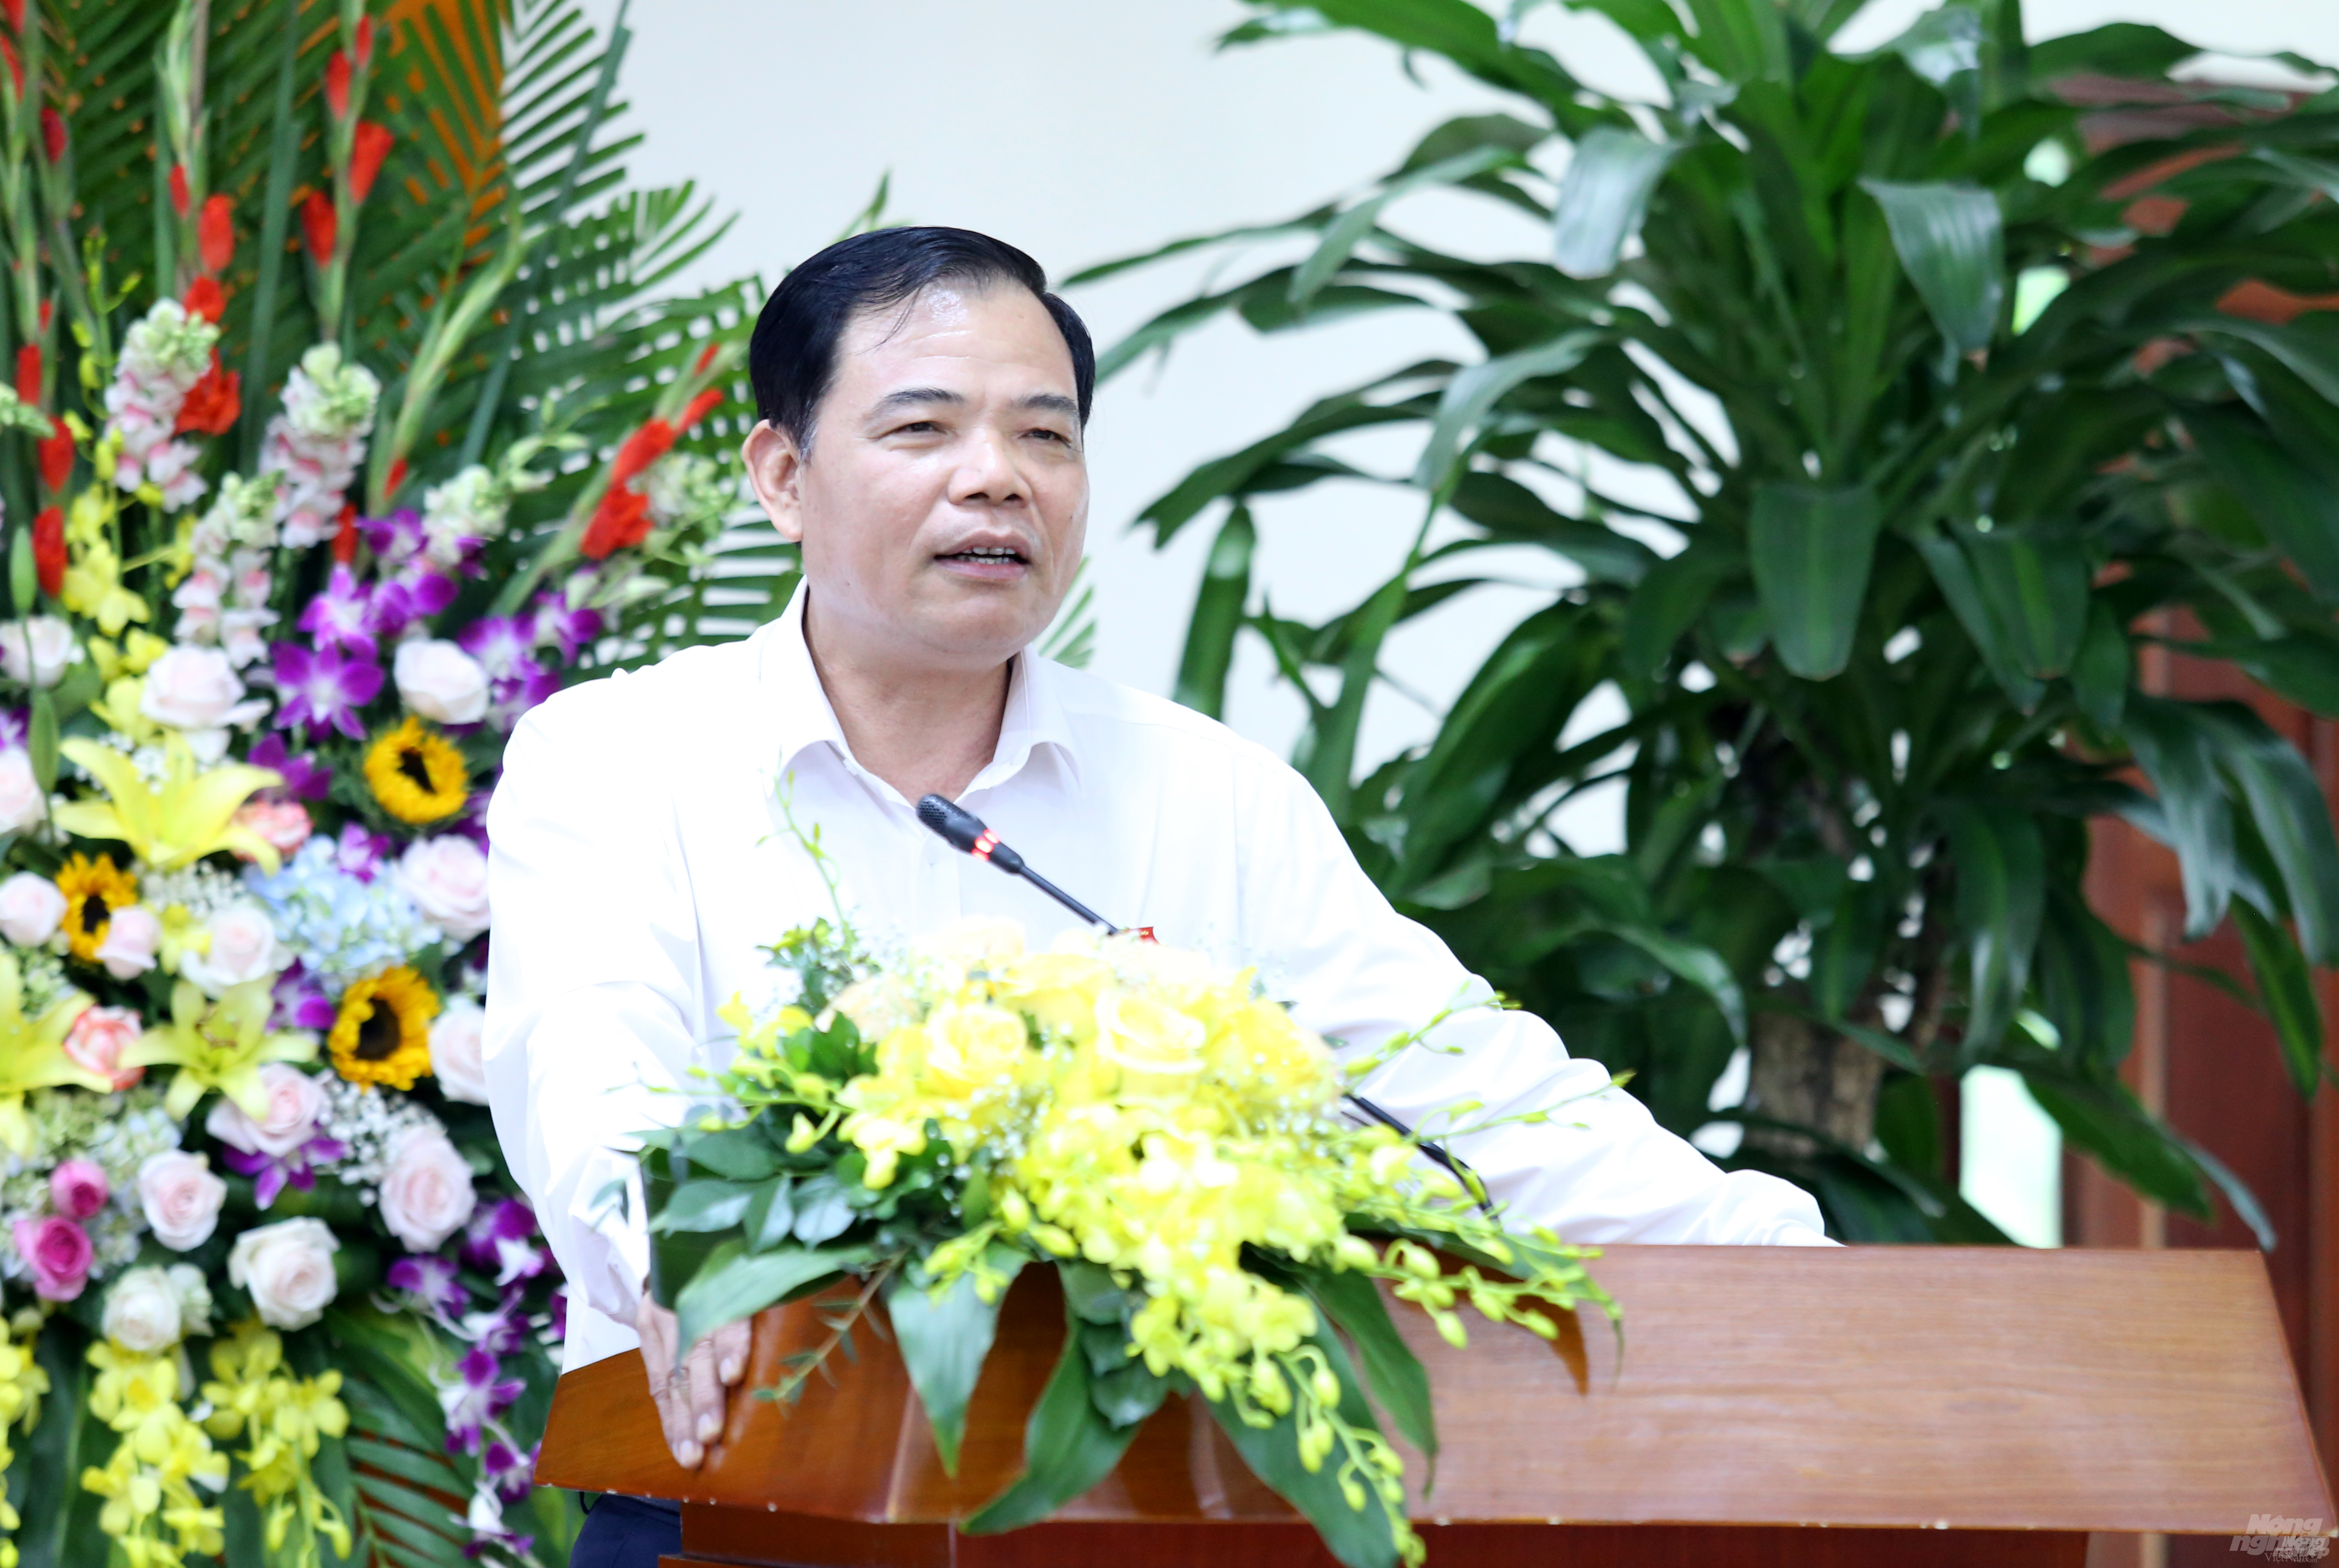 Bộ trưởng Bộ NN-PTNT Nguyễn Xuân Cường phát biểu tại chương trình kỷ niệm 74 năm ngày Phòng, chống thiên tai Việt Nam tại Hà Nội chiều ngày 22/5. Ảnh: Minh Phúc.